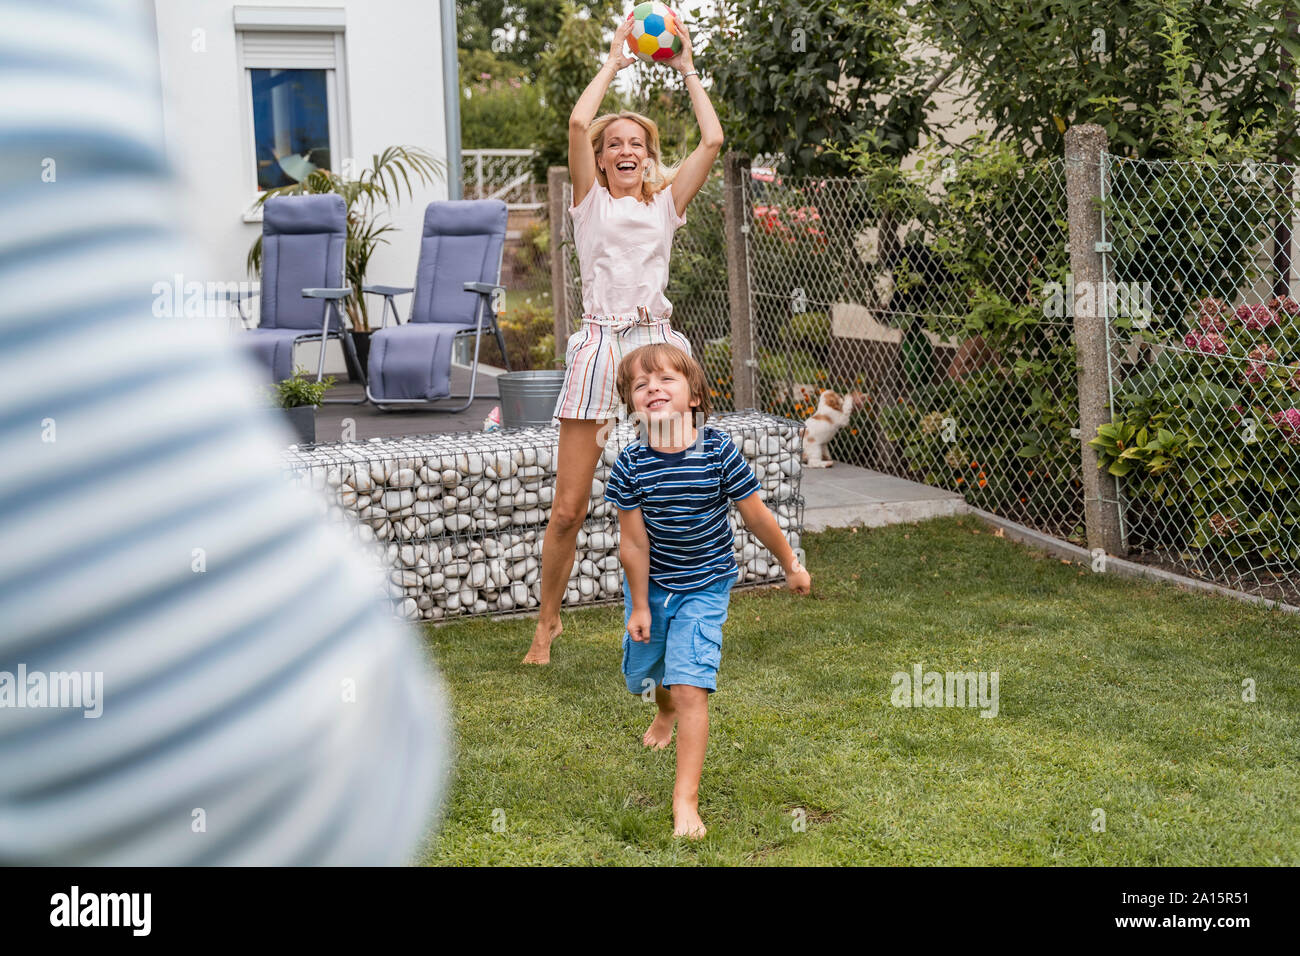 La famiglia felice a giocare a calcio in giardino Foto Stock